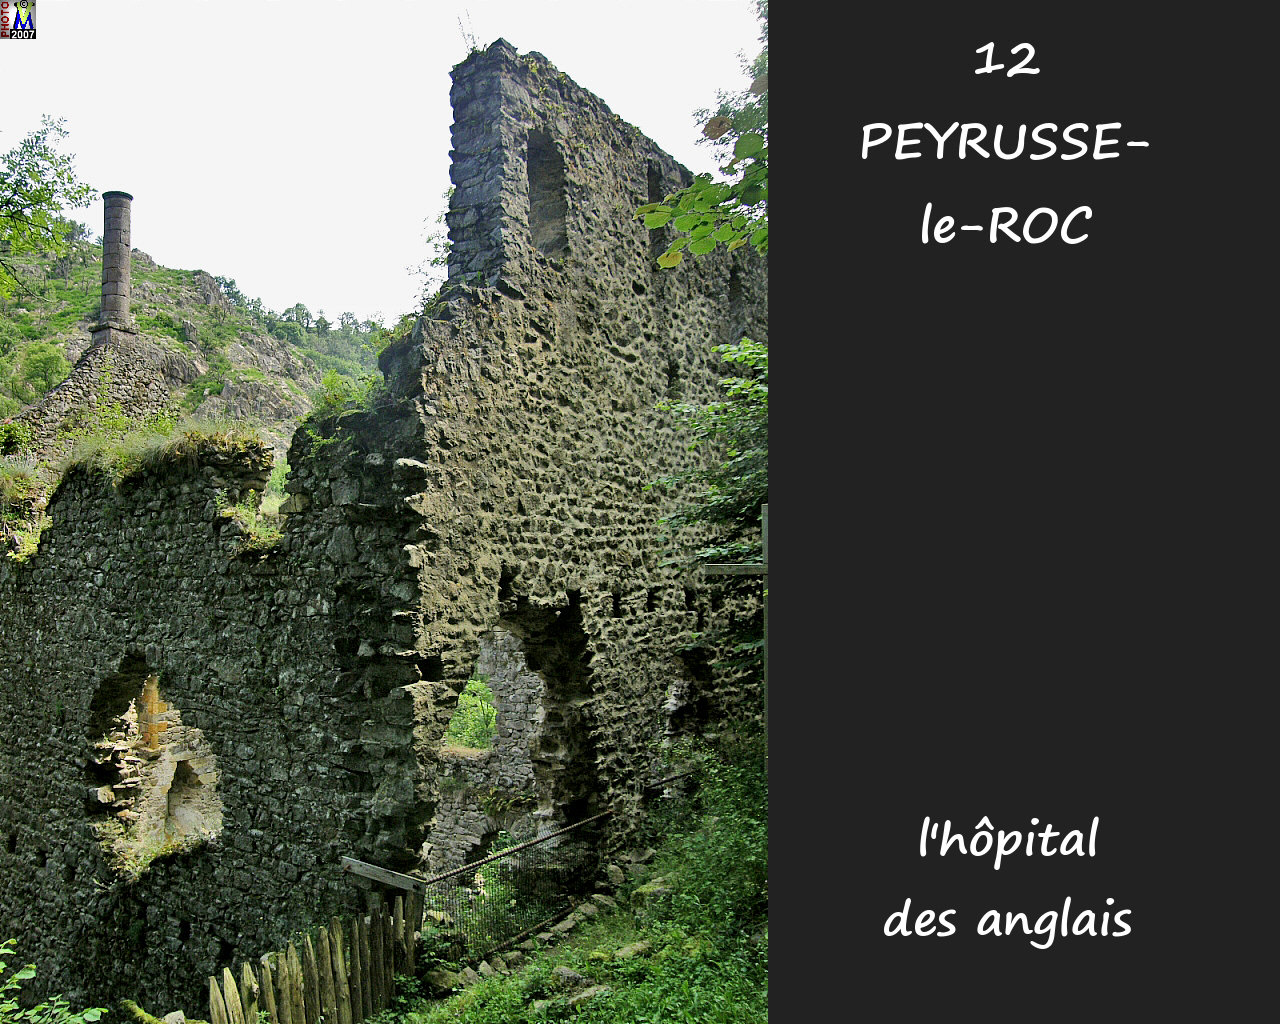 12PEYRUSSE-ROC_ruines-hopital_102.jpg